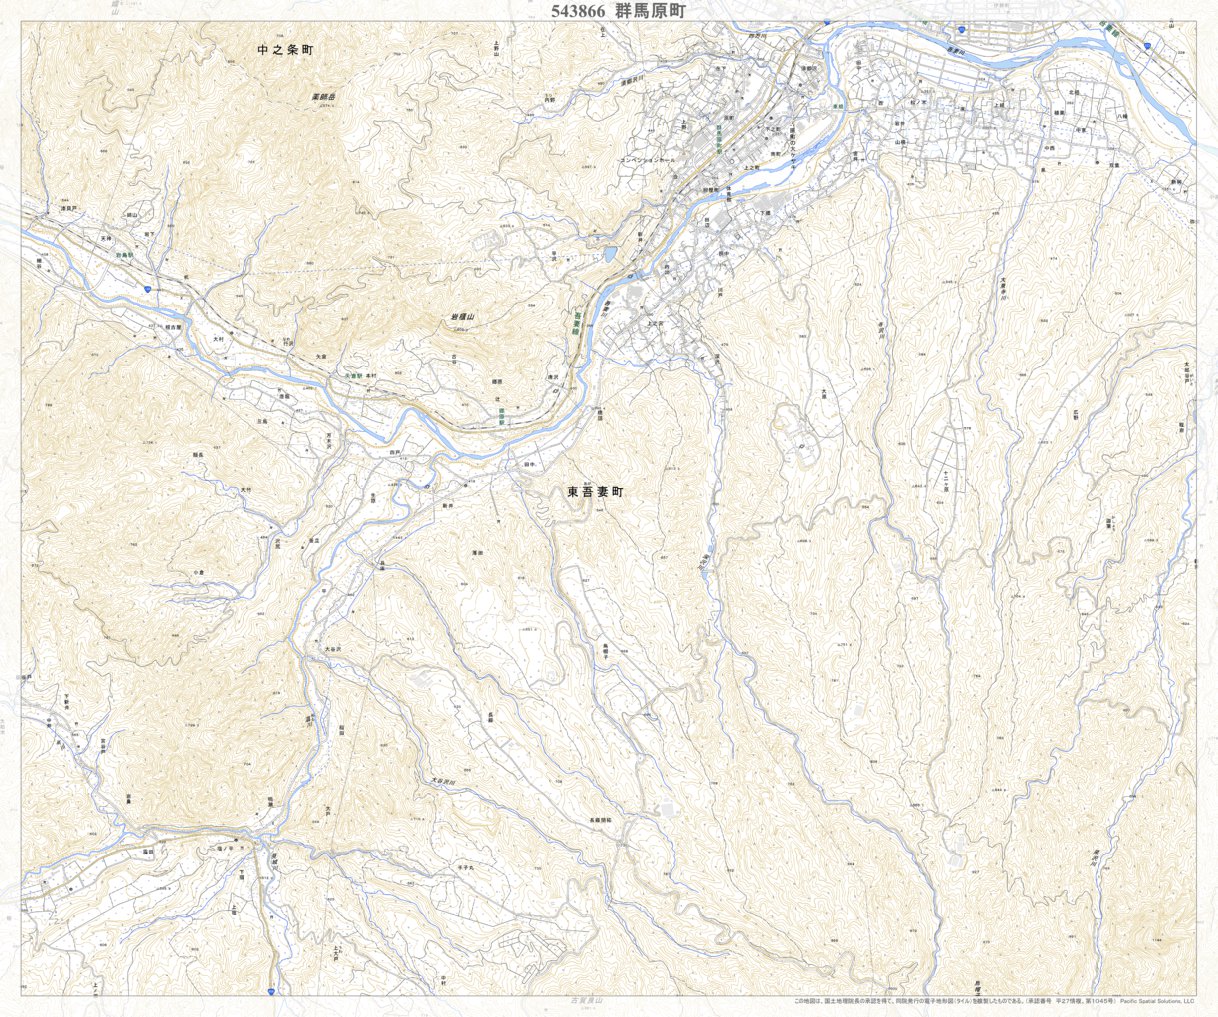 543866 群馬原町 （ぐんまはらまち Gummaharamachi）, 地形図 Map by 